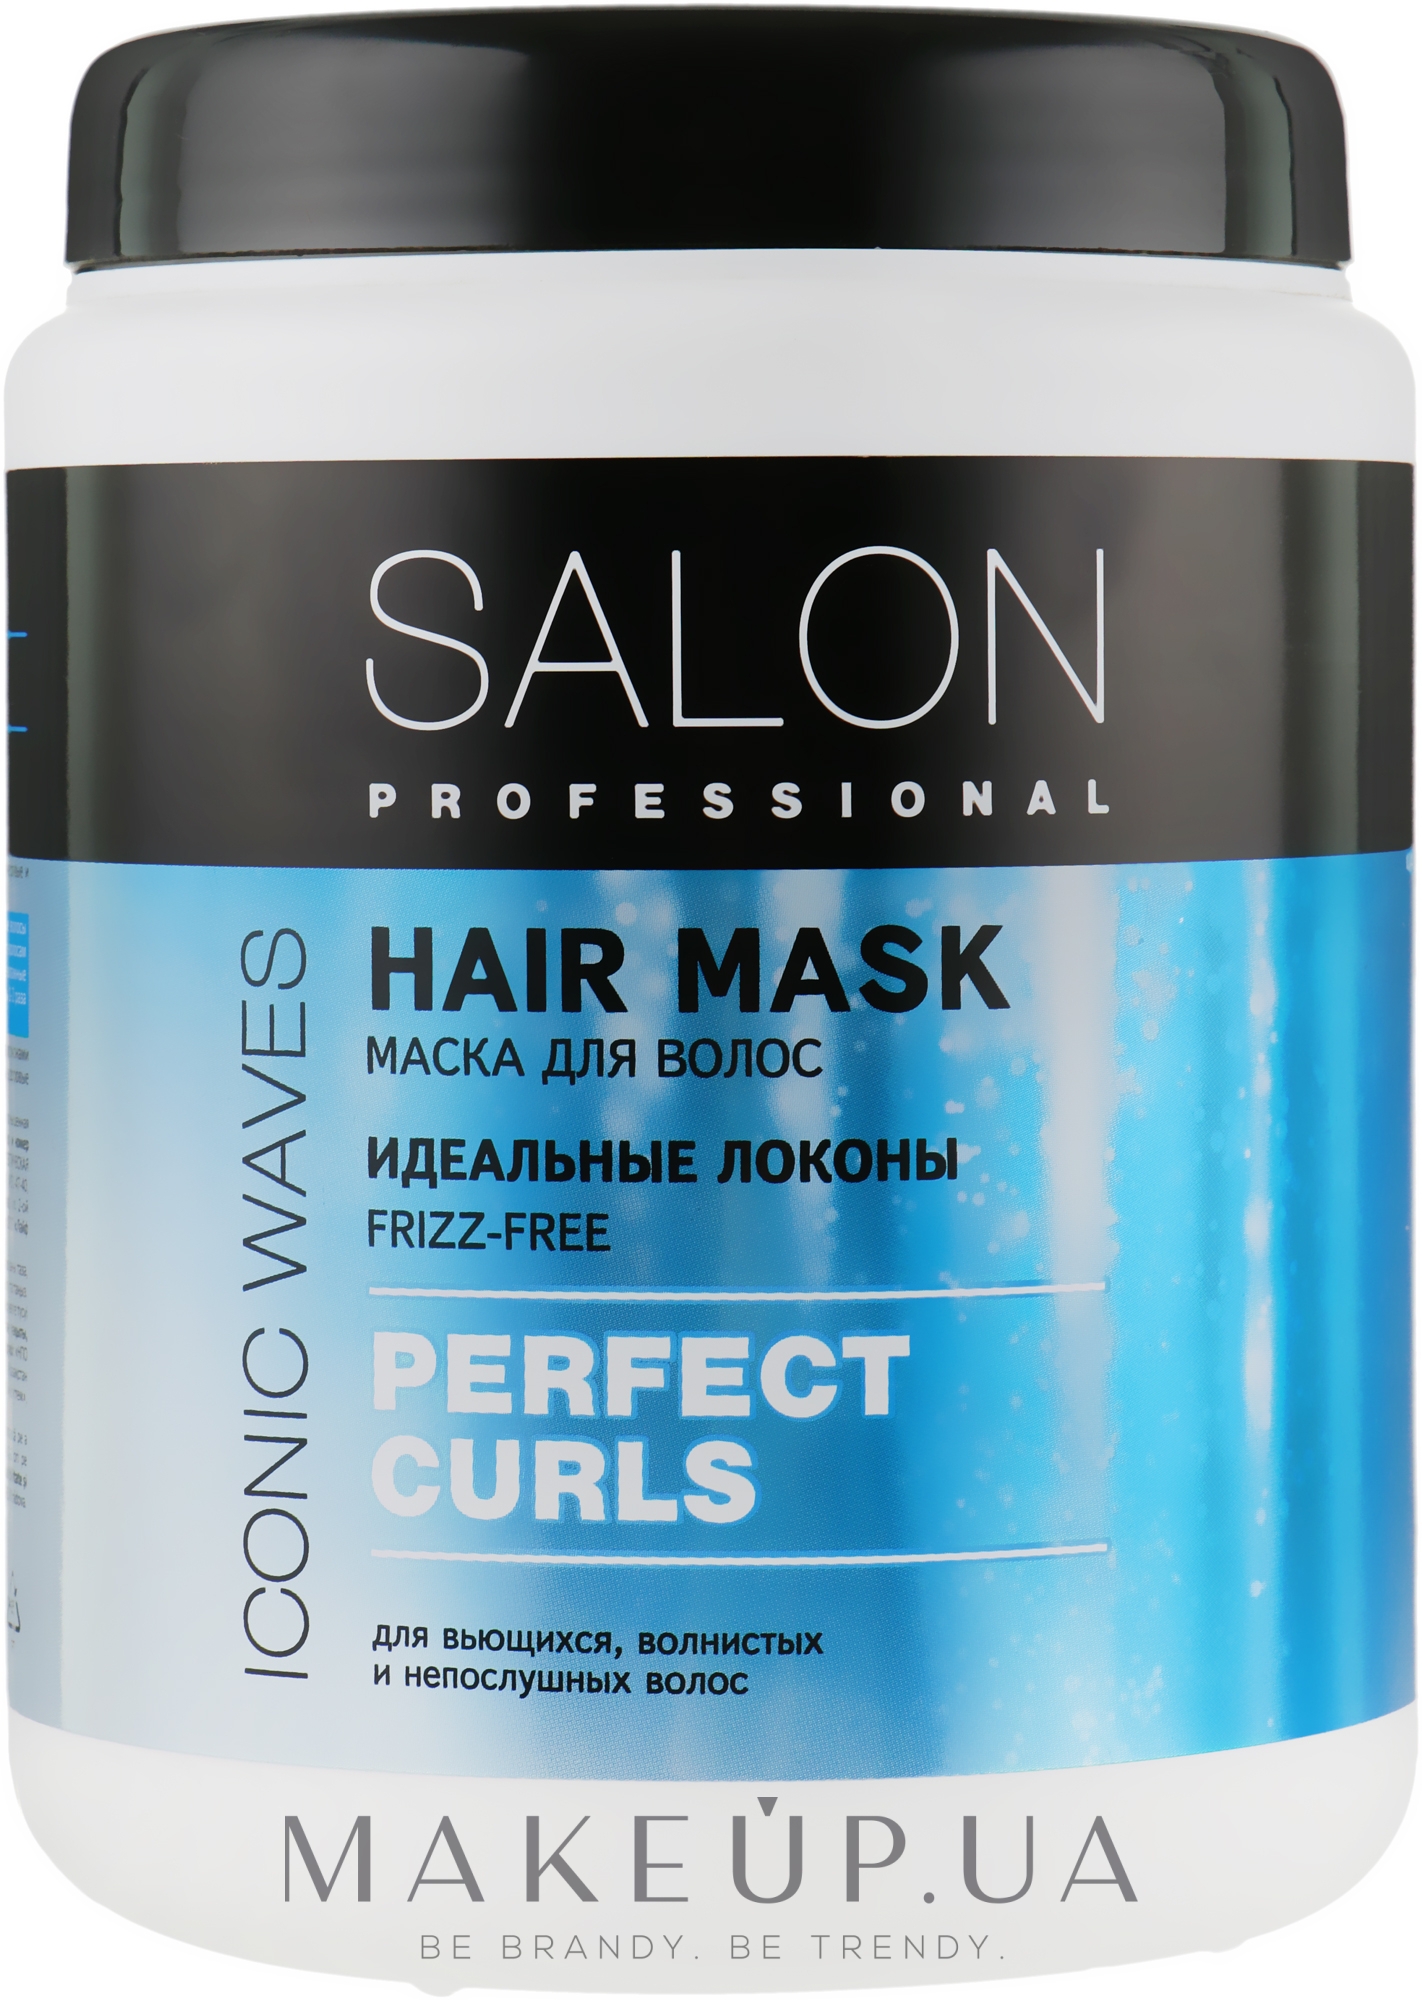 Маска для волос "Идеальные локоны" - Salon Professional Hair Mask Perfect Curls — фото 1000ml